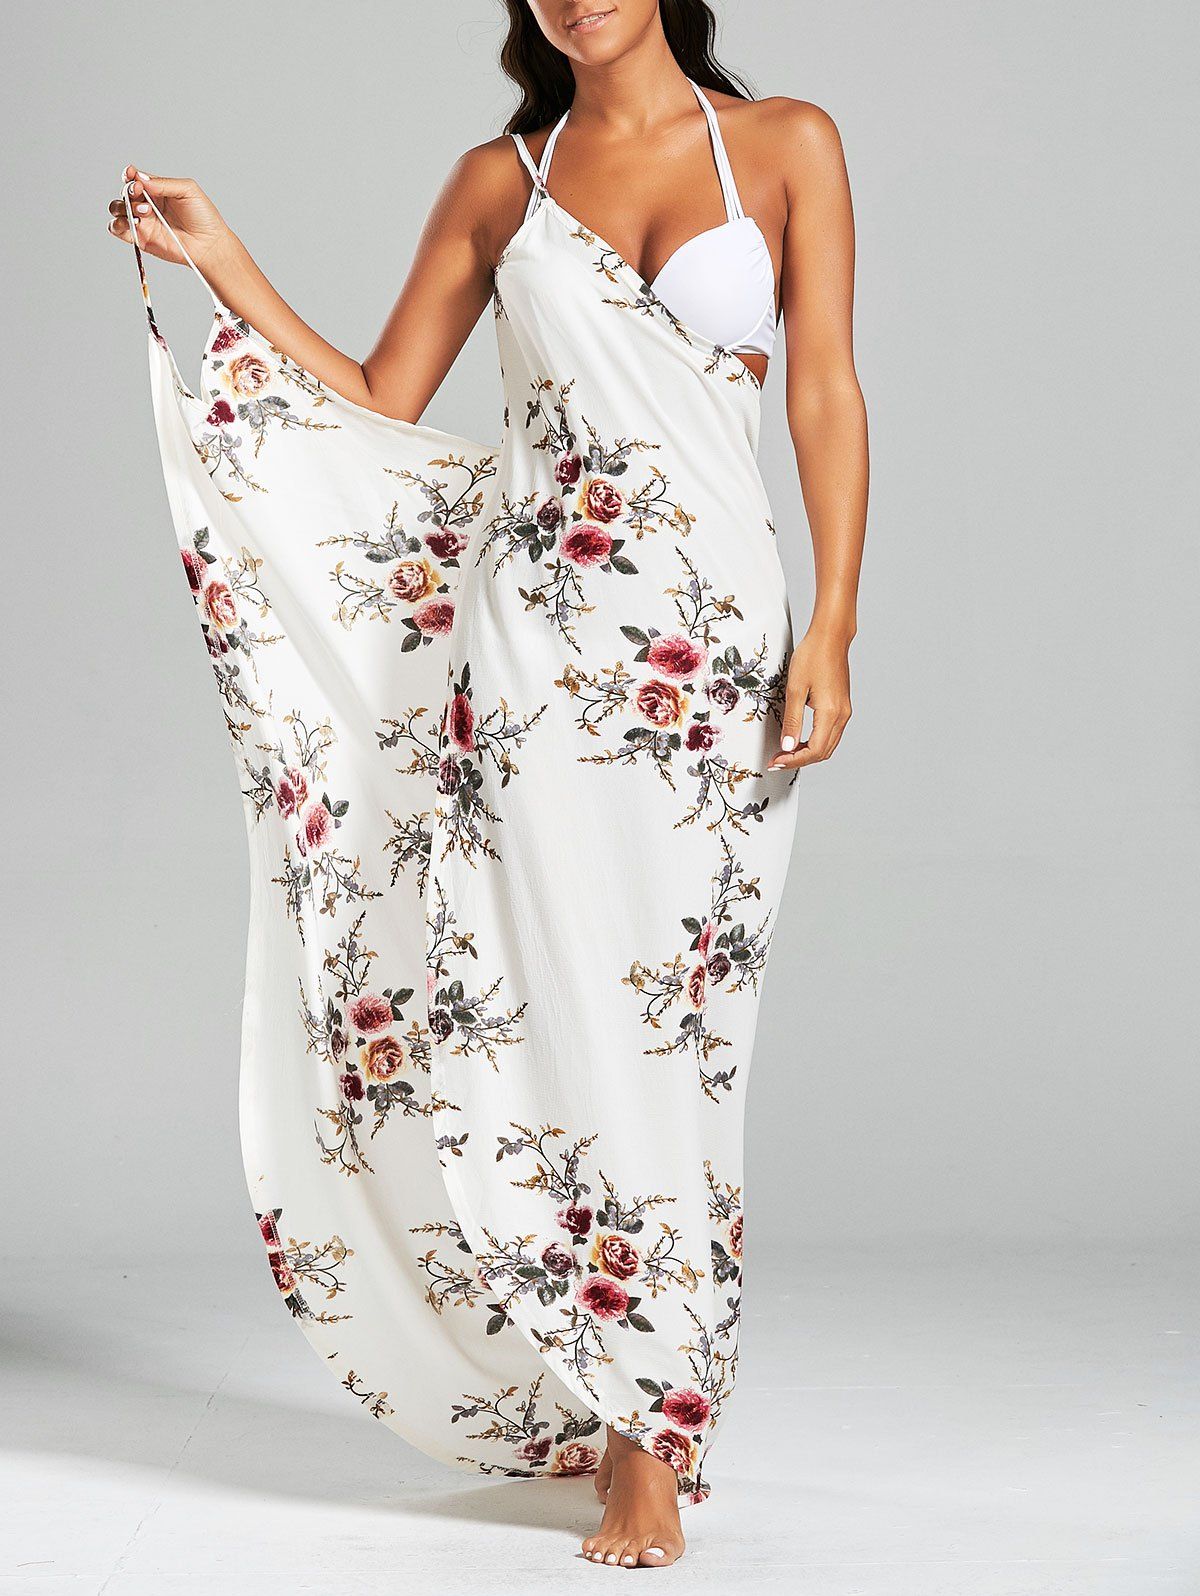 Chiffon Floral Convertible Sarong Wrap Cover Up Dress -  